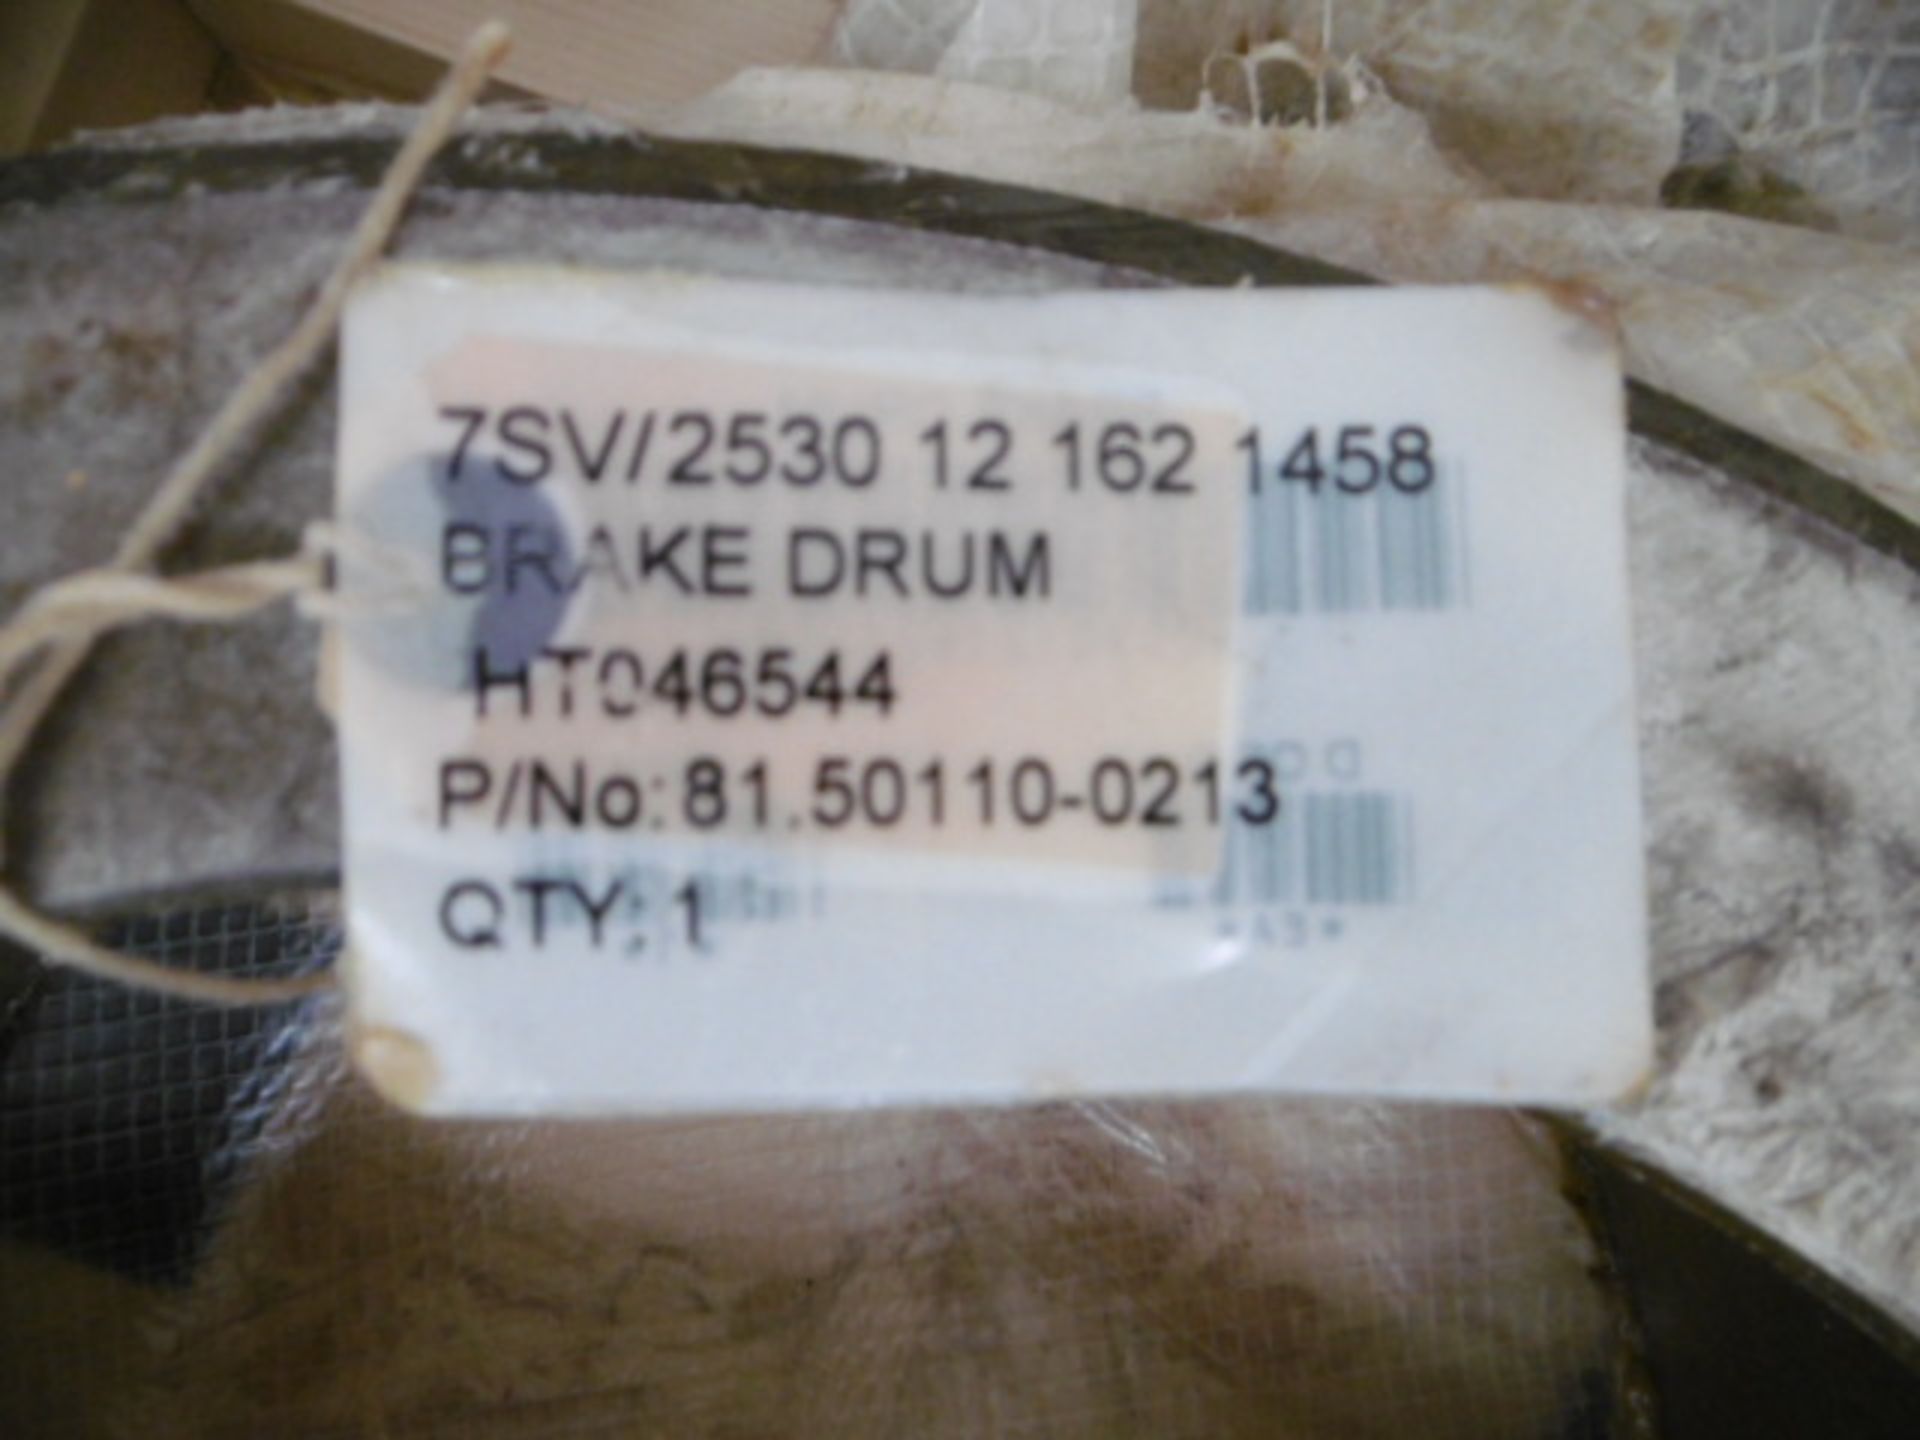 9 x MAN Brake Drums P/No HT046544 - Image 4 of 5